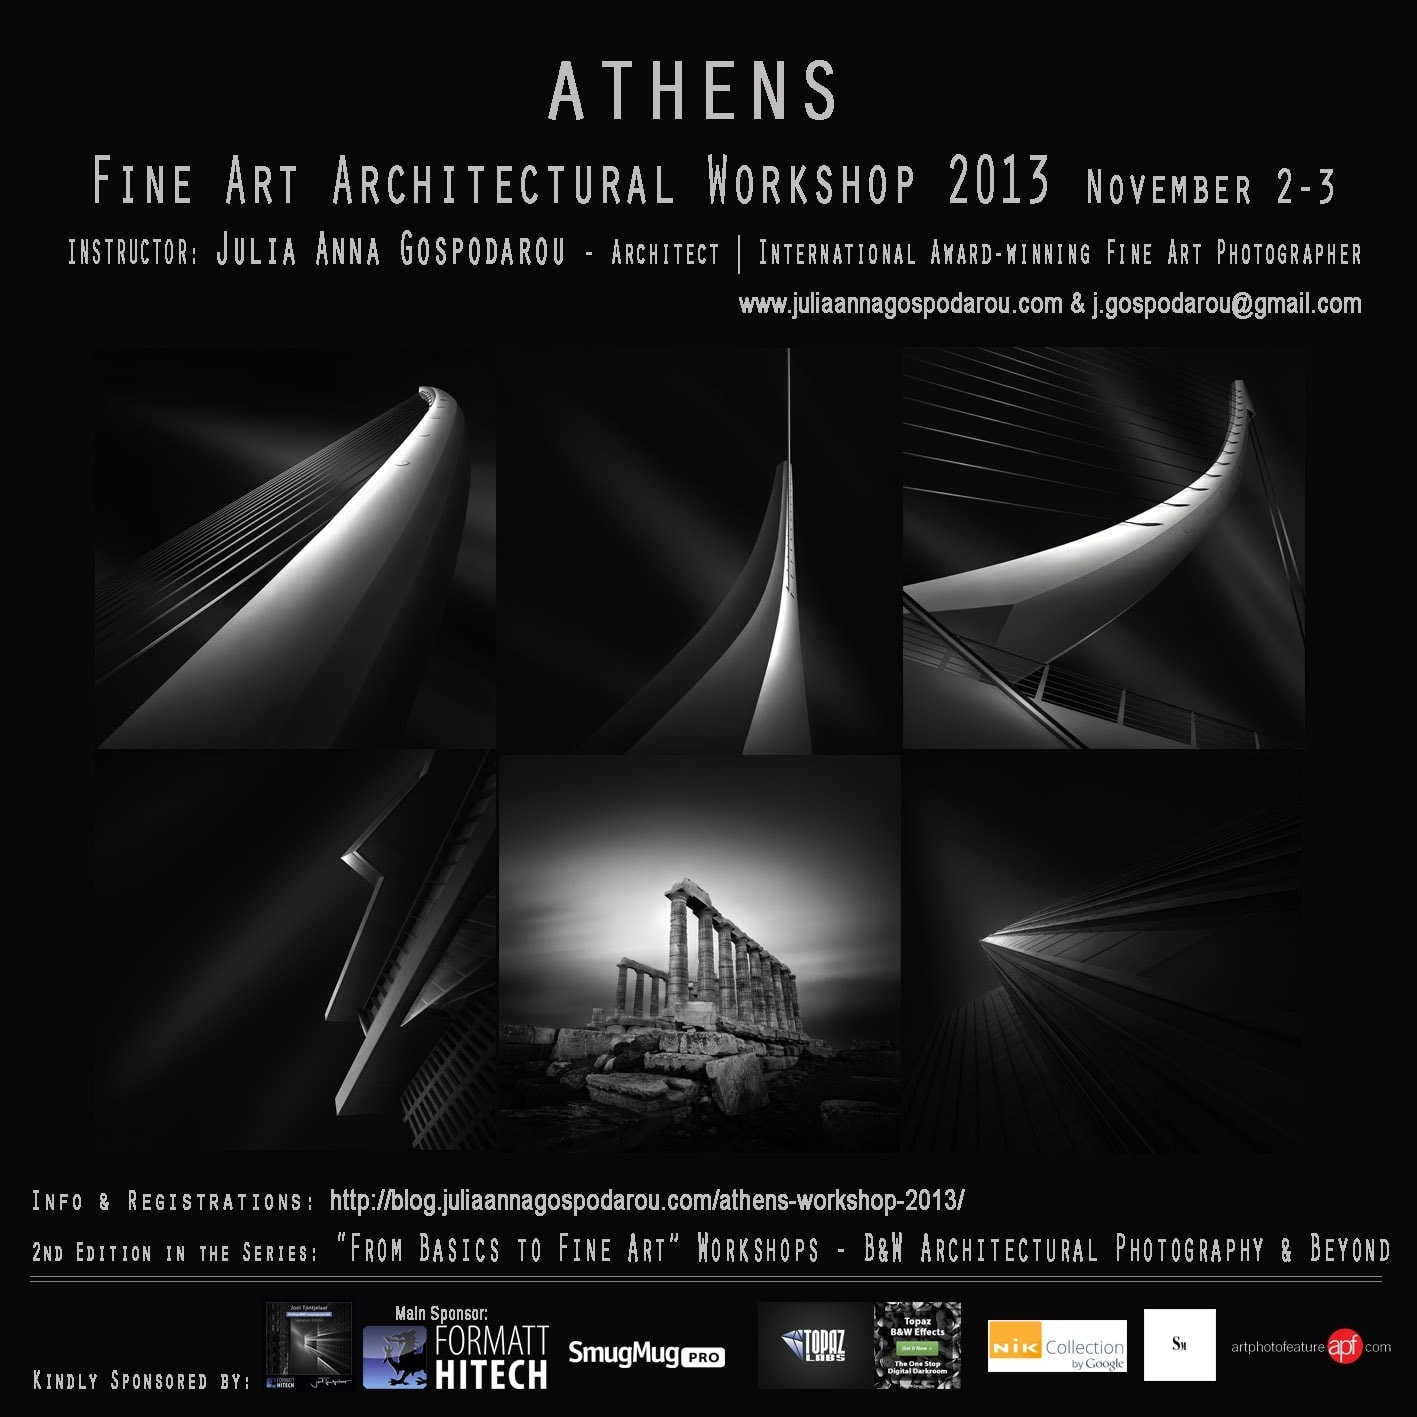 Athens Fine Art Architectural Workshop 2013, November 2-3